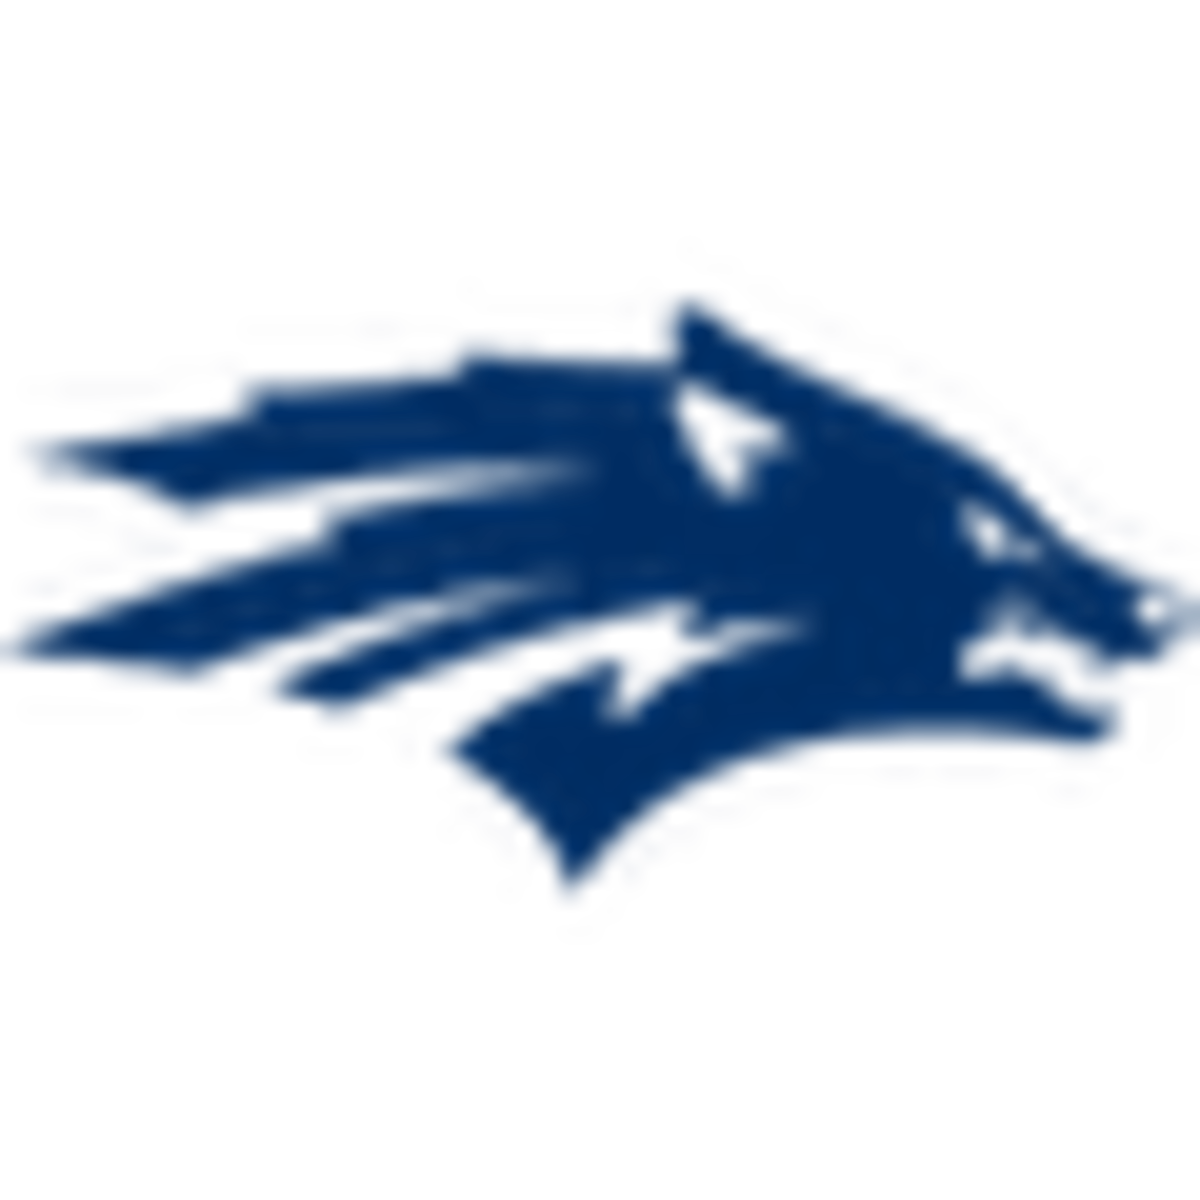 Nevada logo